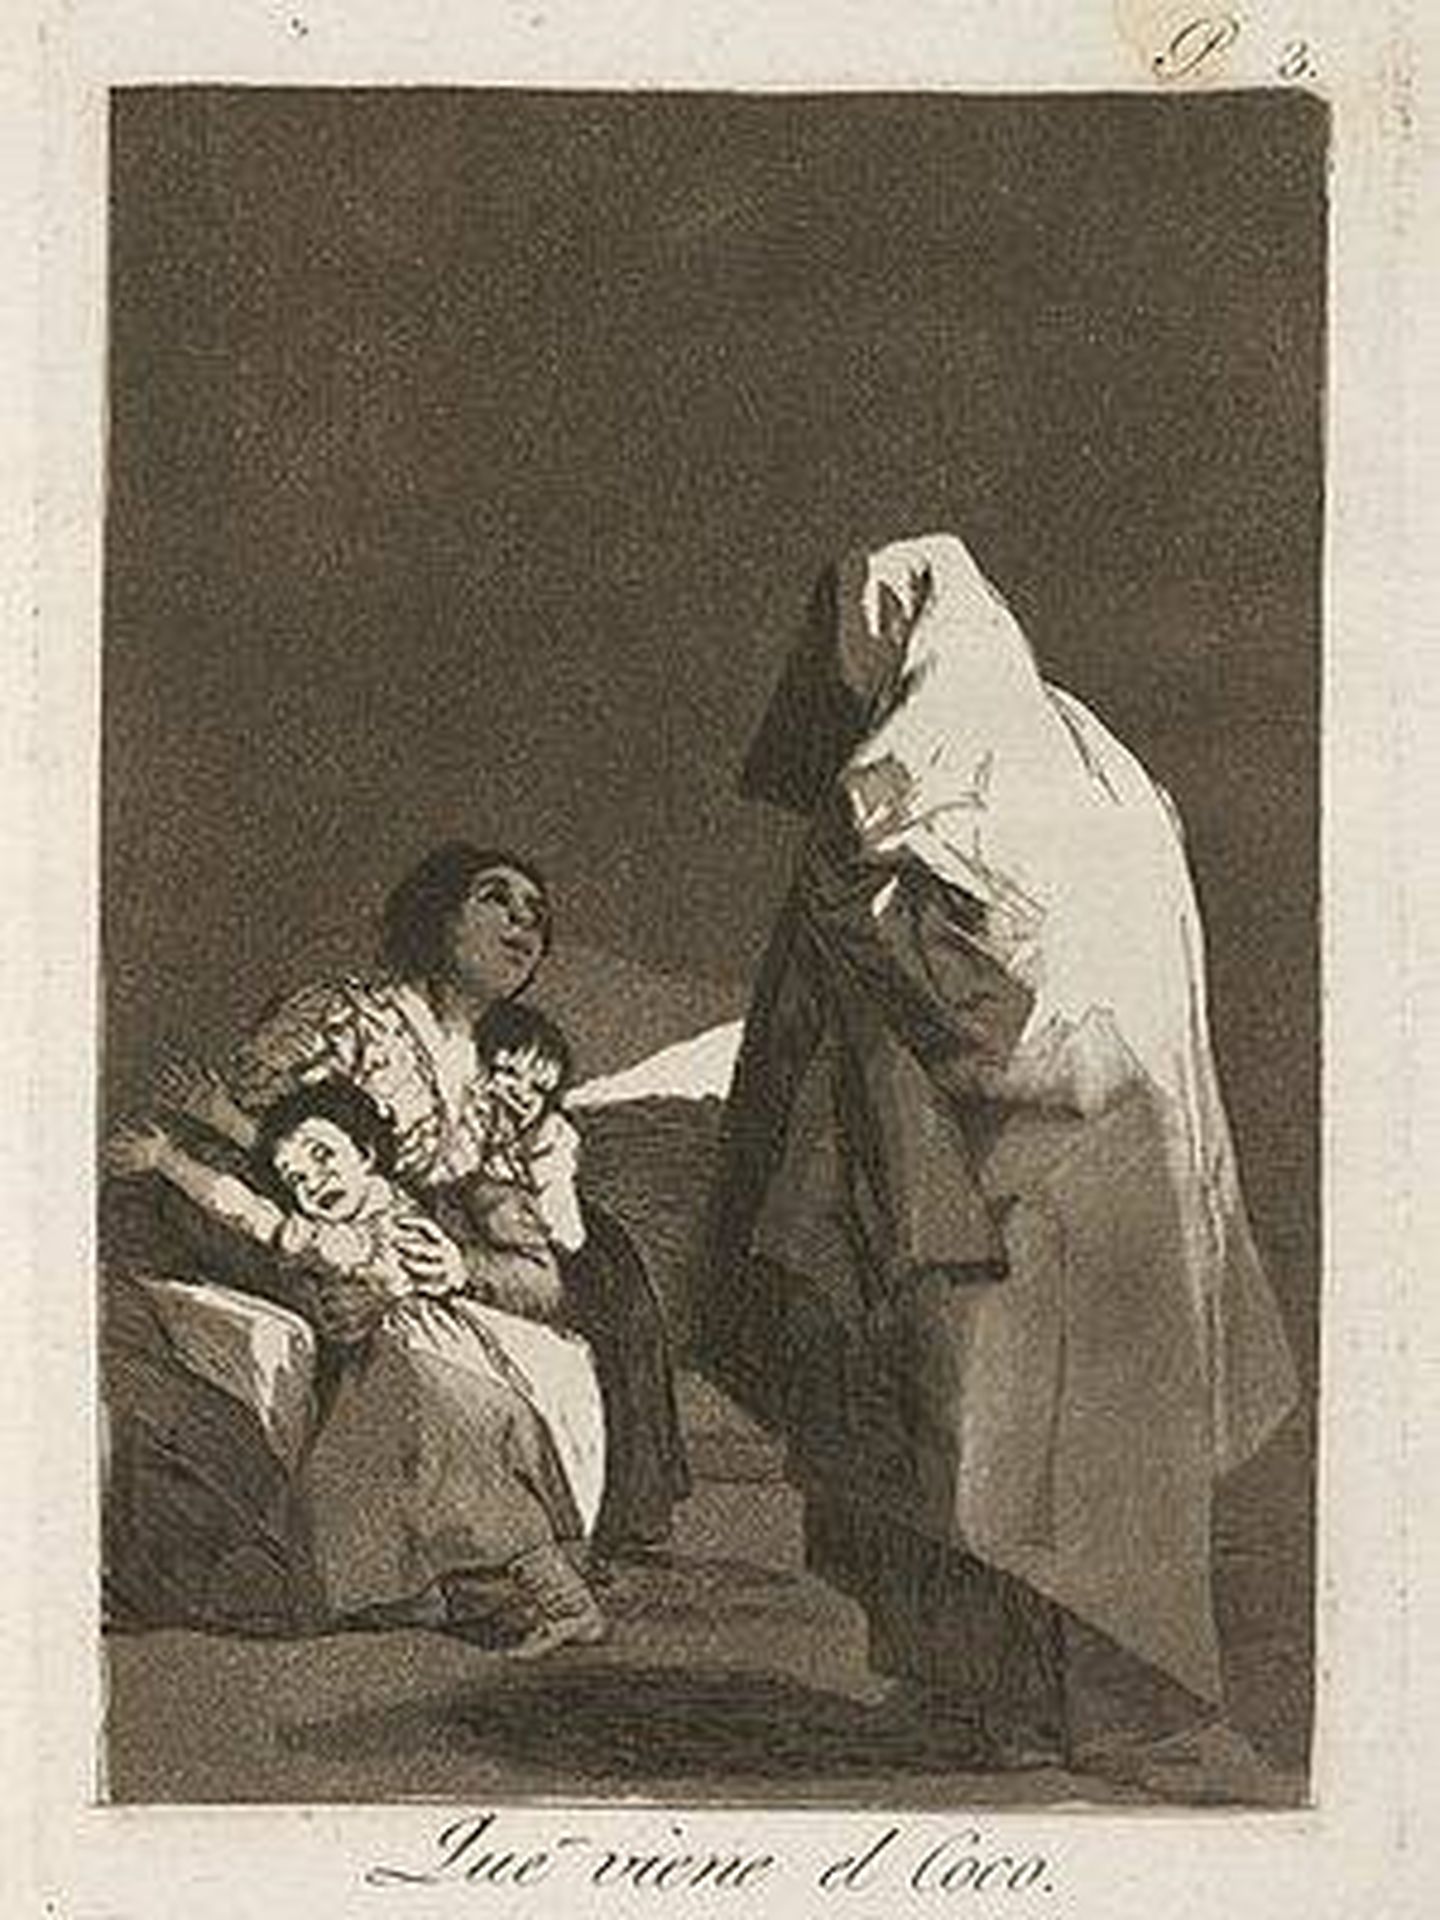 Grabado 'Qué viene el coco' (1799), de Francisco de Goya. 